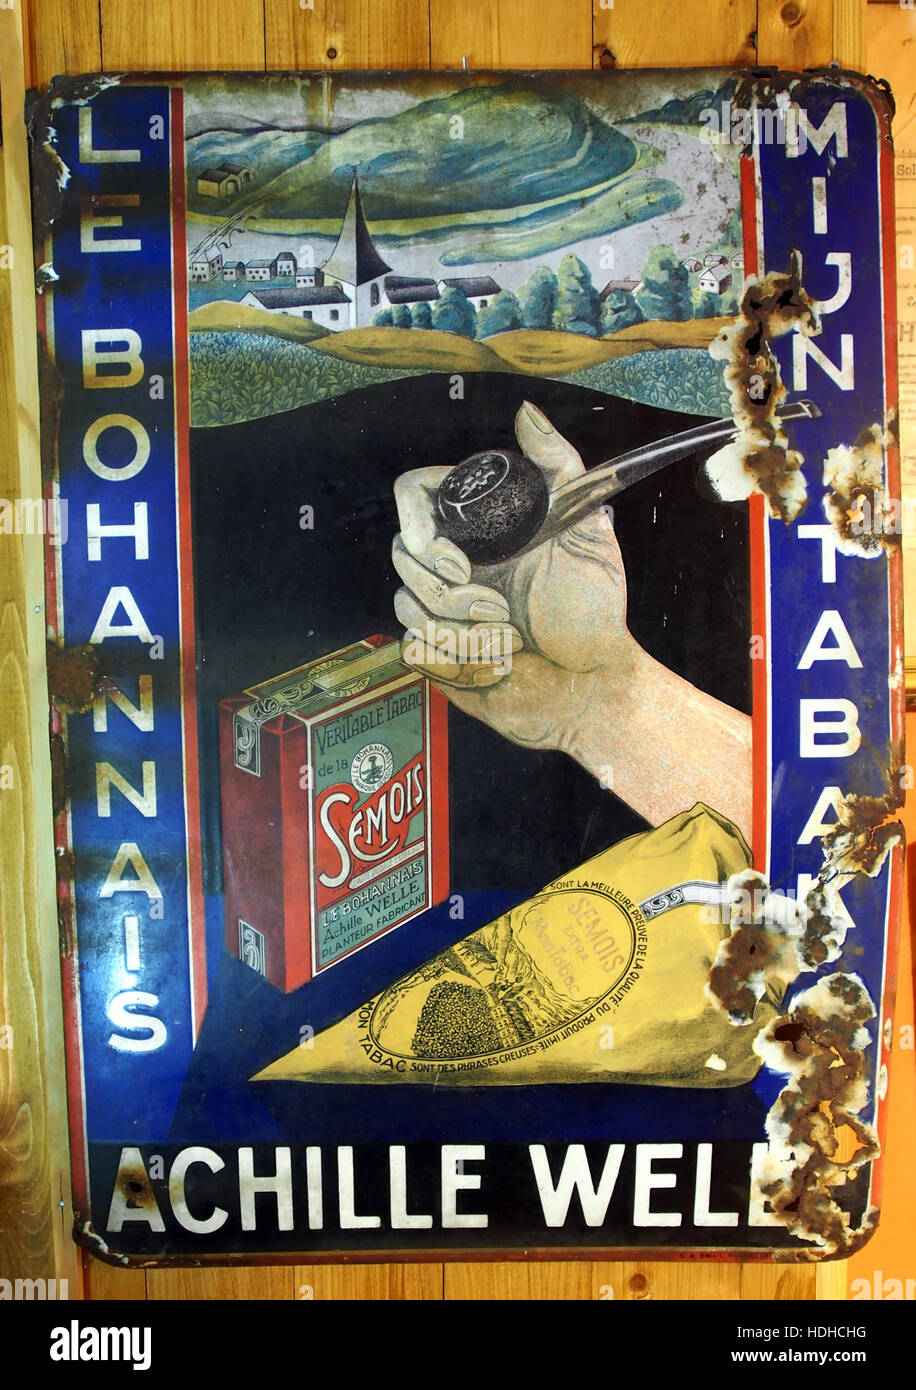 Le Bohannais, Semois tabak, Achille Well, enamel advertising sign,Museum Winter 1944 in Gingelom Stock Photo